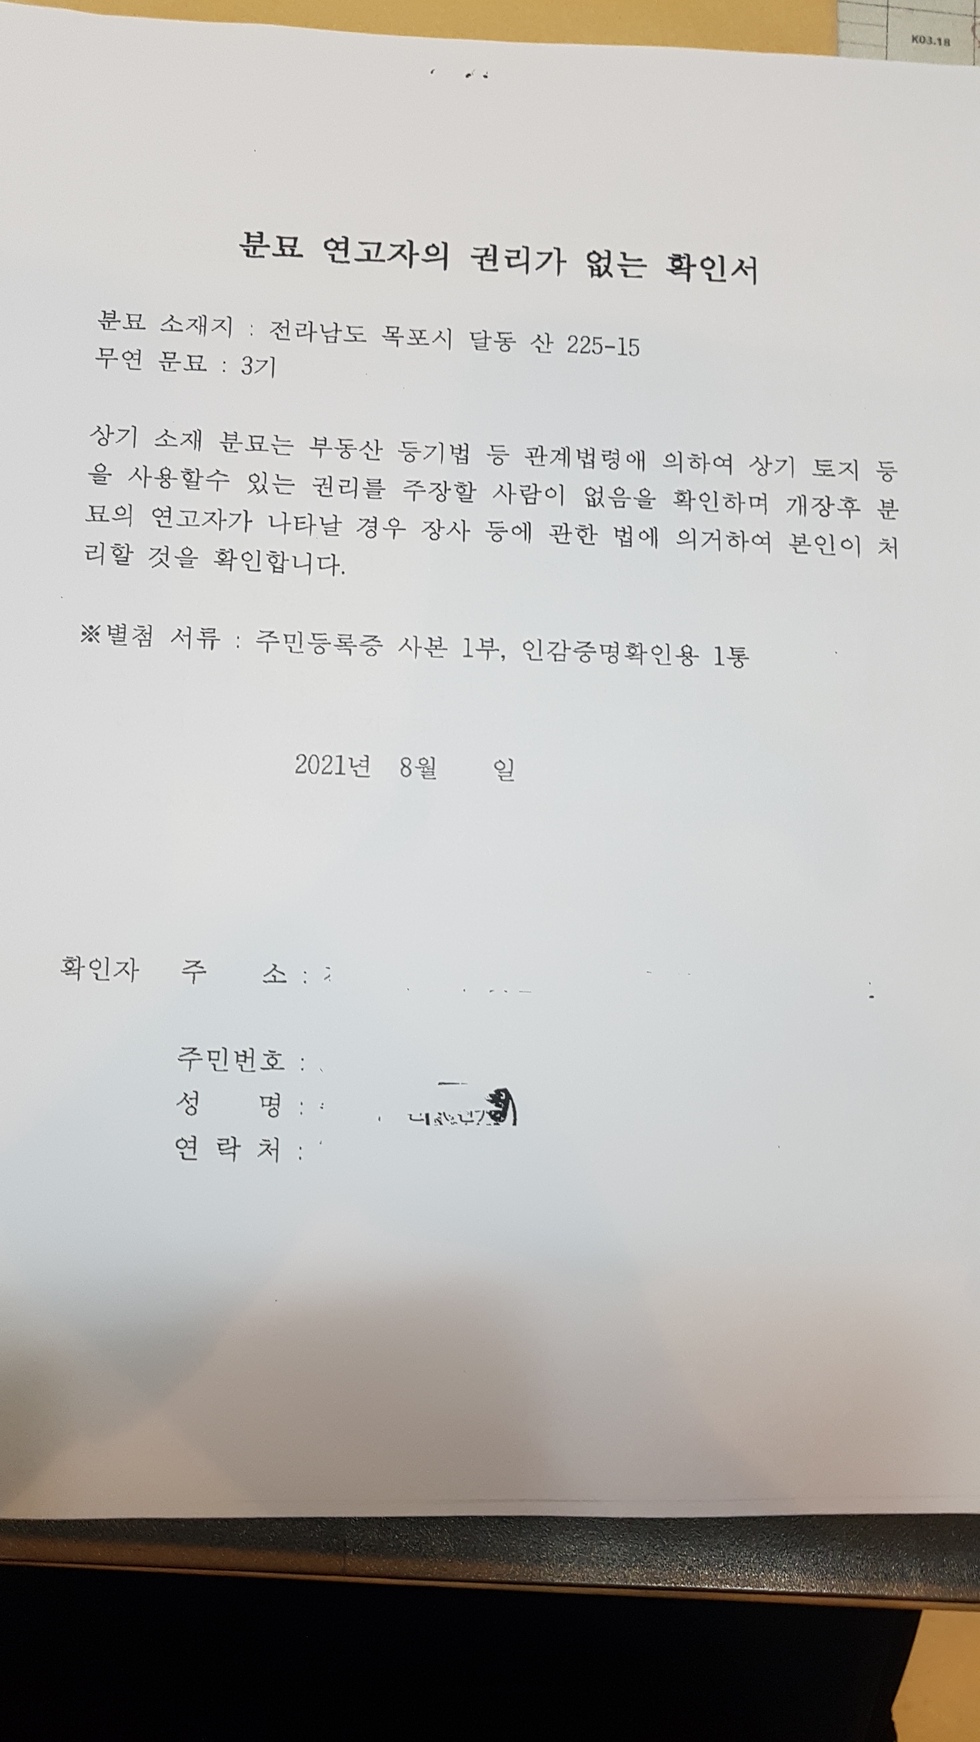 분묘 연고자의 권리가 없는 확인서 서류를 촬영한 사진